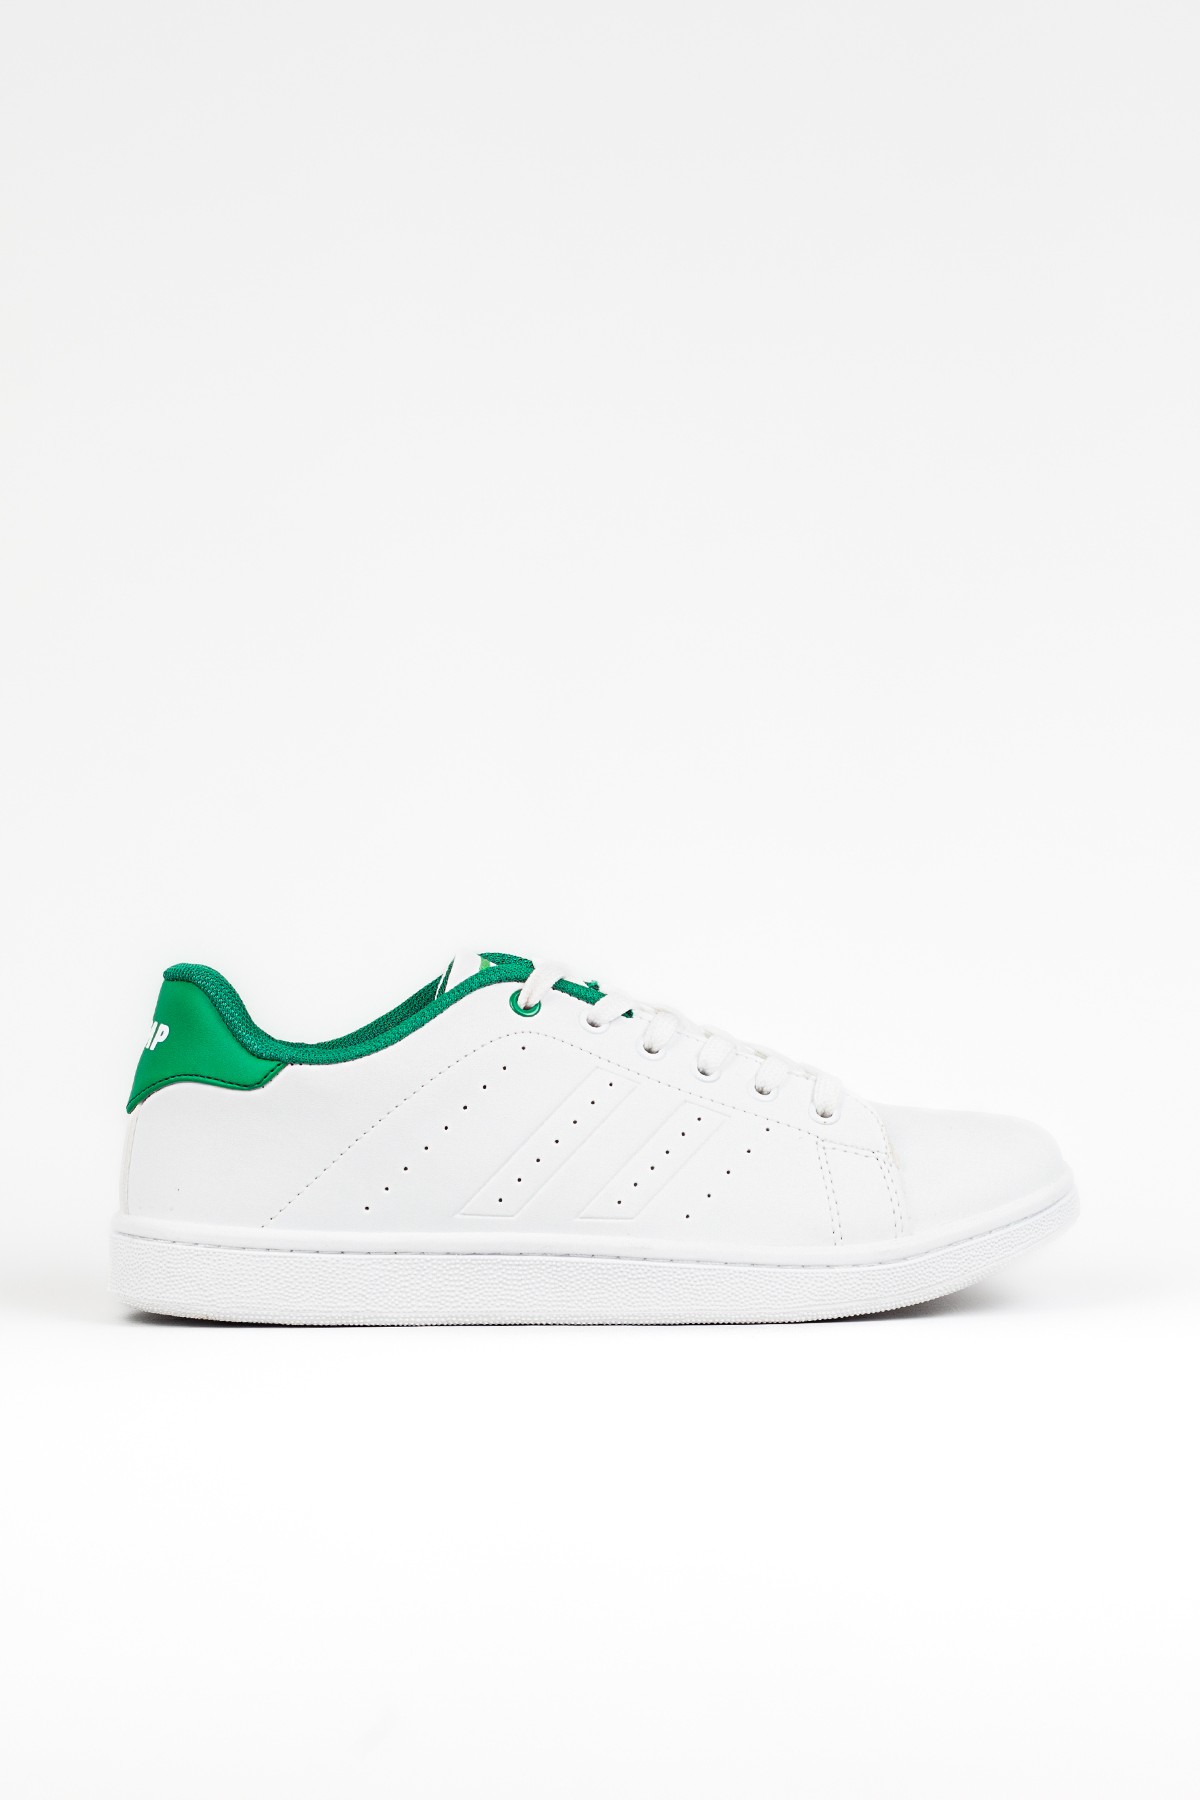 Jump Erkek Günlük Beyaz Yeşil Sneaker, Spor Ayakkabı